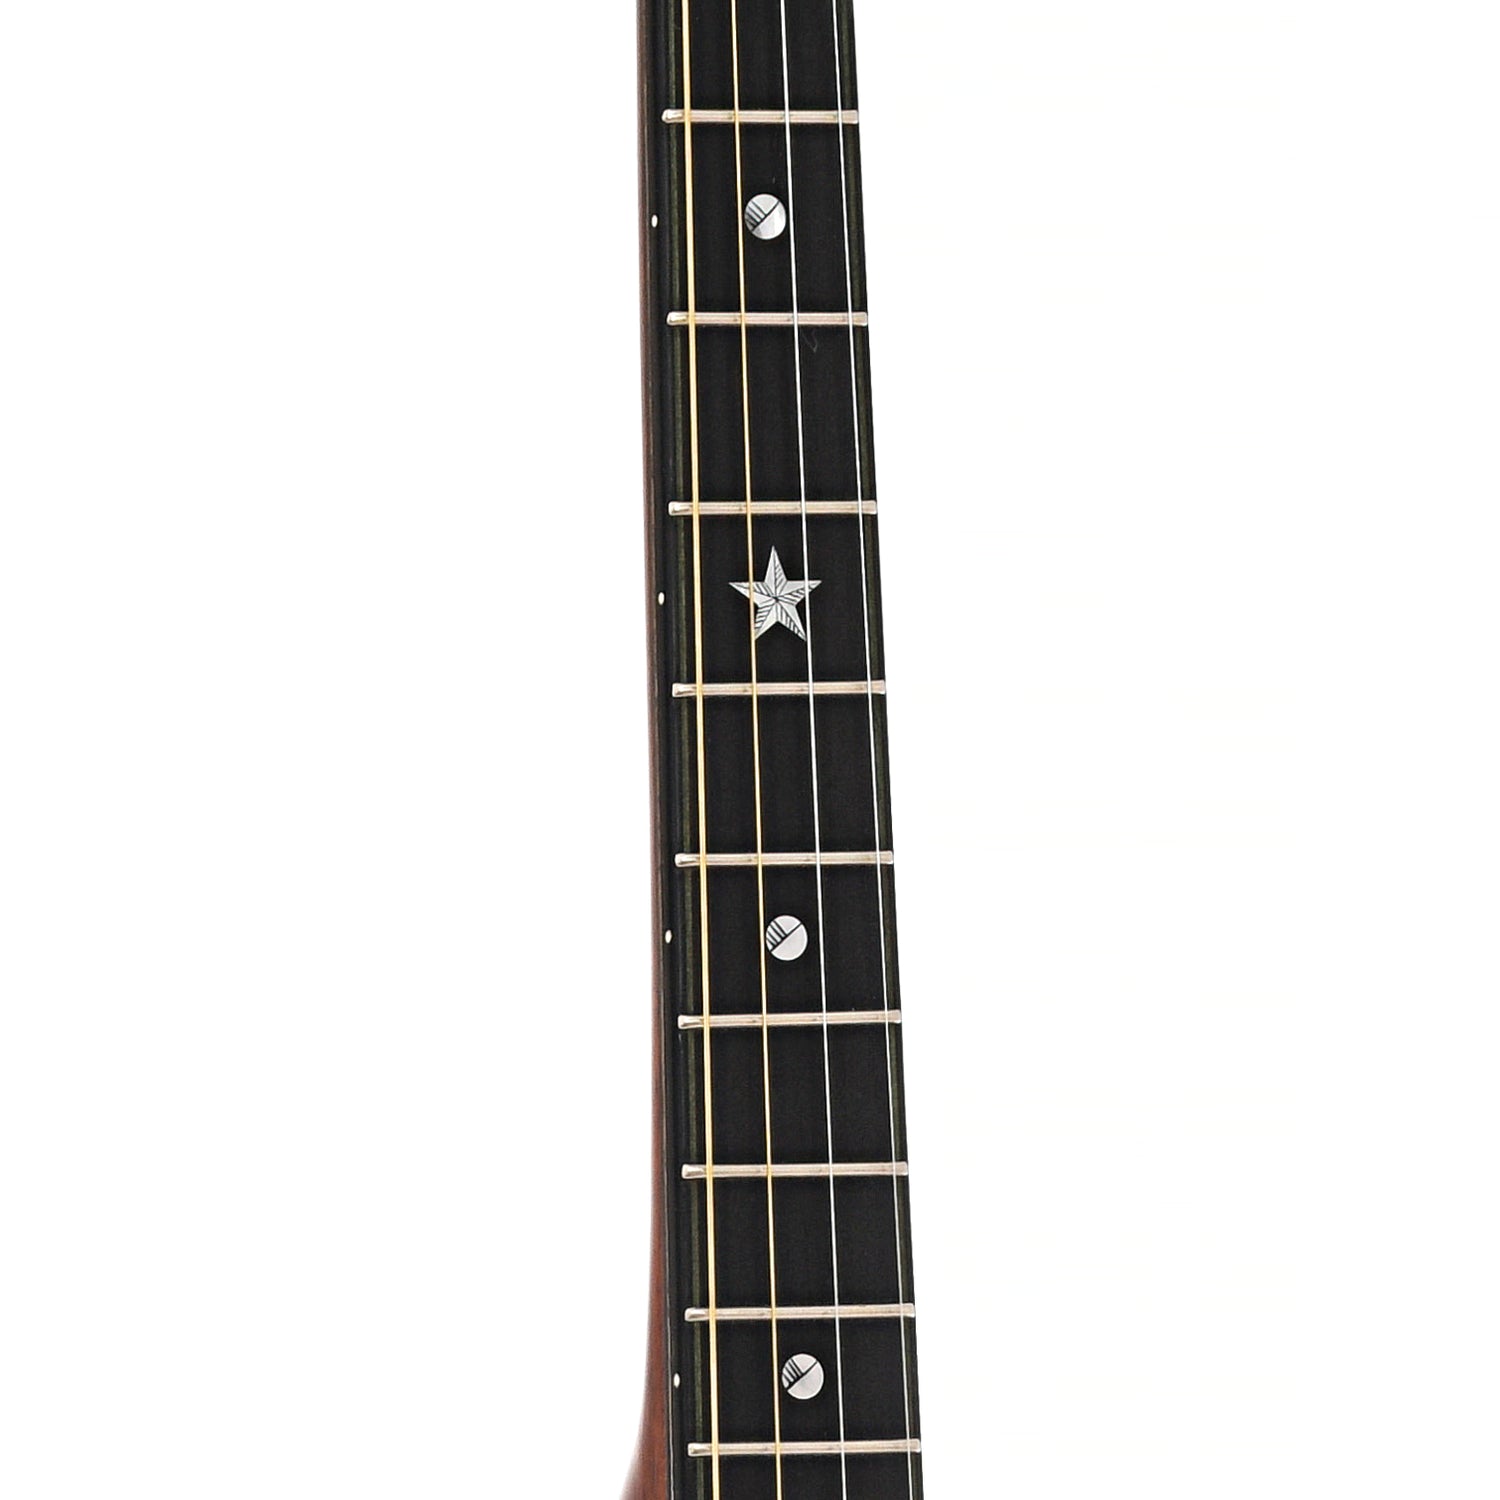 Fretboard of Fairchild Tenor Guitar 